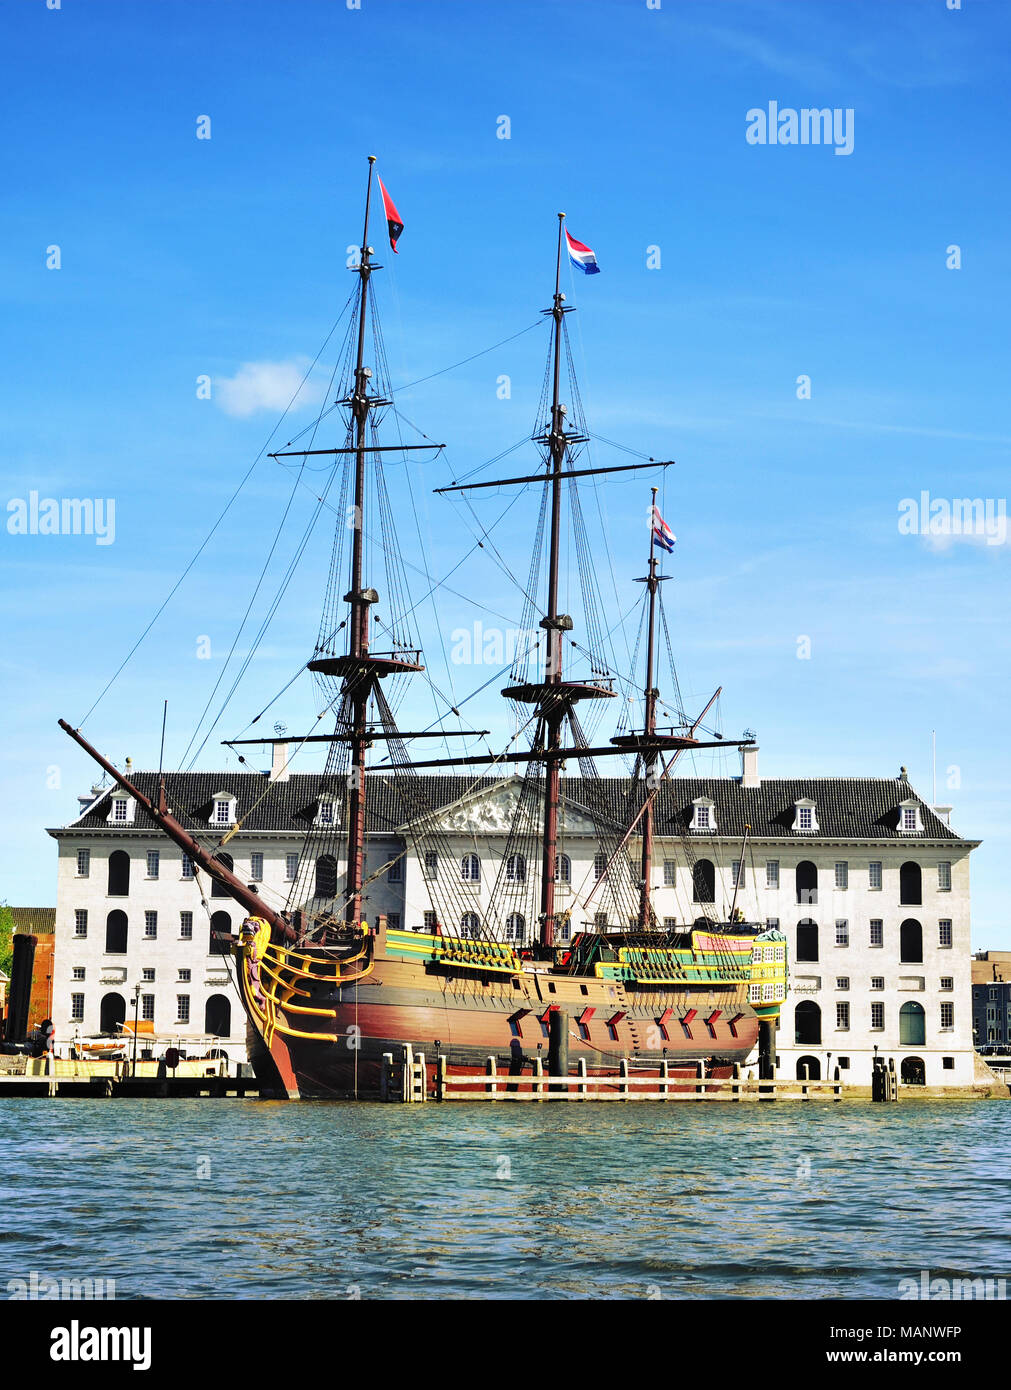 Bateau de pirate ou bateau en bois en face d'un bâtiment historique d'Amsterdam. L'attraction touristique, un navire. Banque D'Images